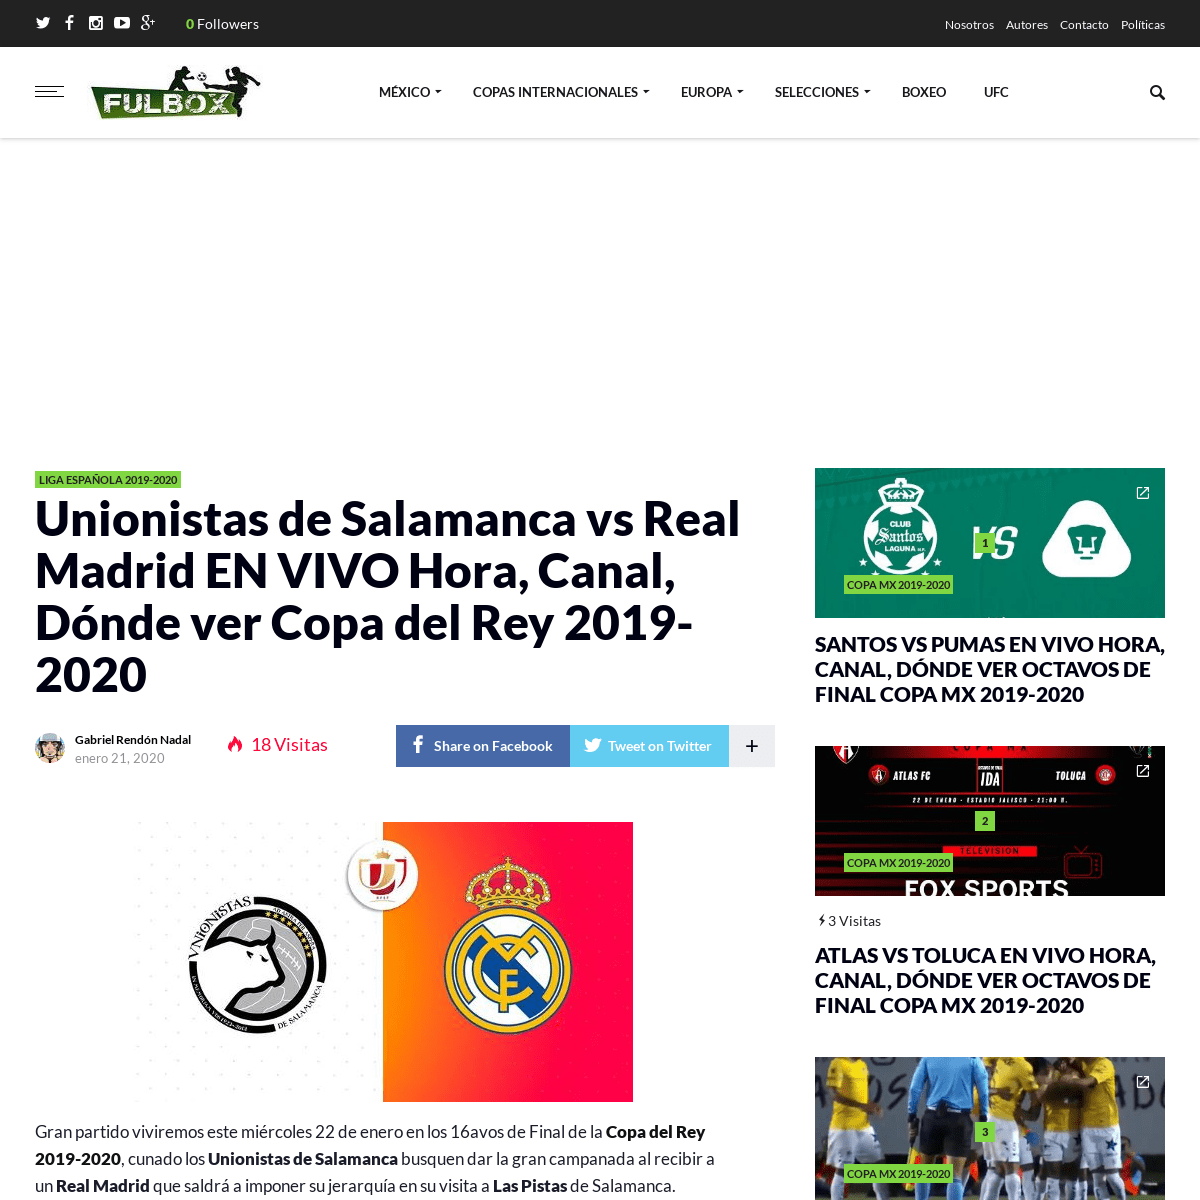 A complete backup of fulbox.com/2020/01/21/unionistas-de-salamanca-vs-real-madrid-en-vivo-hora-canal-donde-ver-copa-del-rey-2019